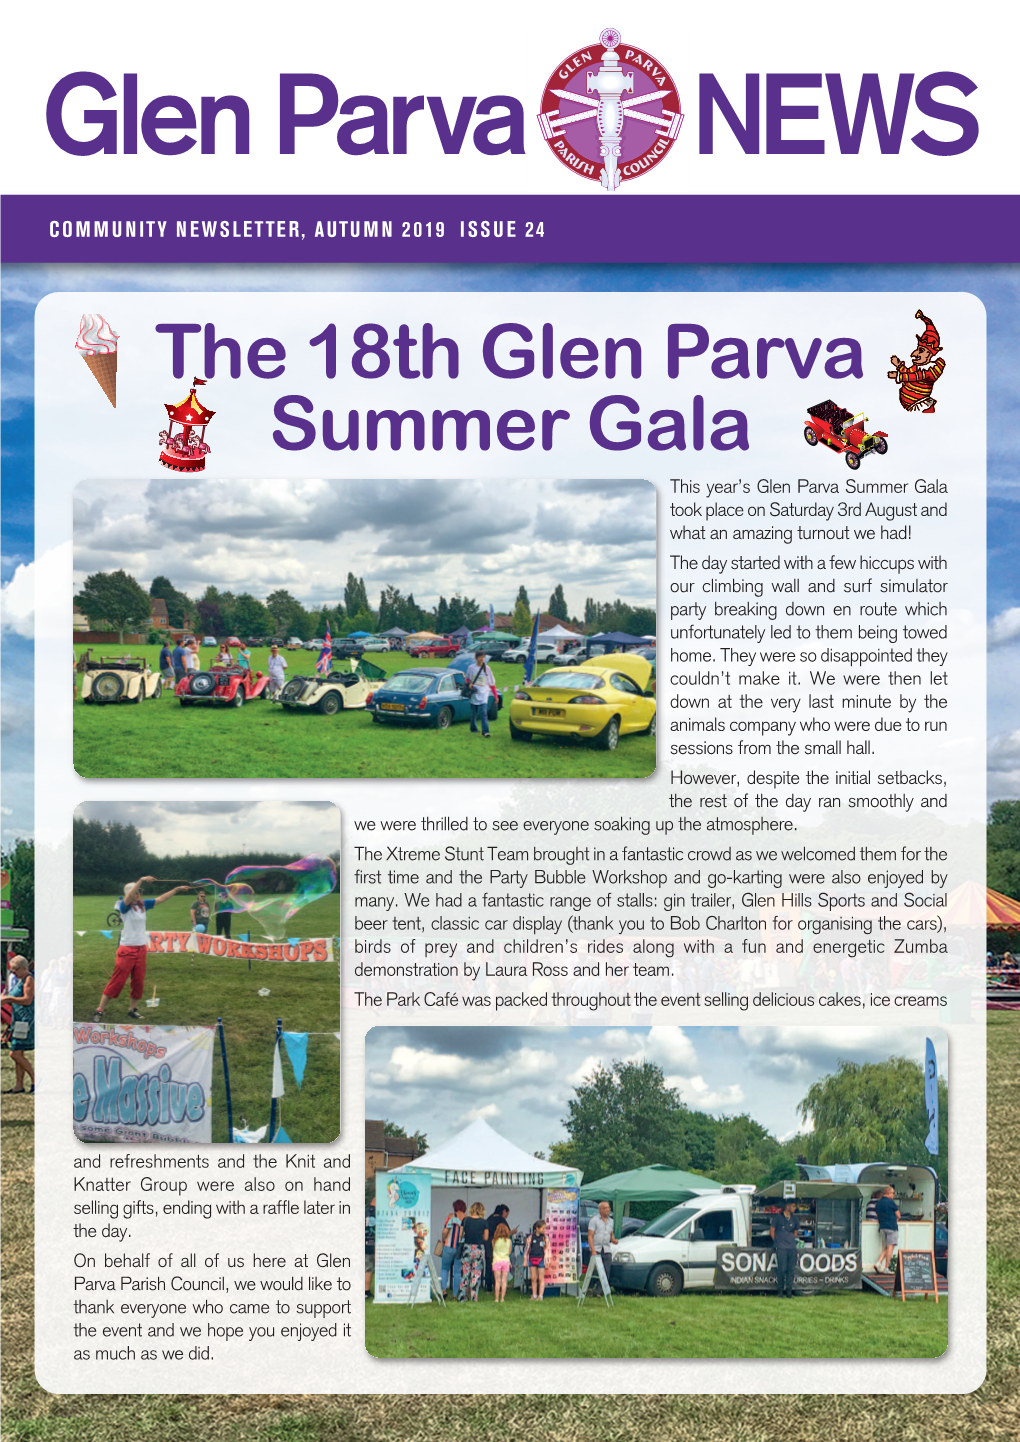 Glen Parva Autumn Newsletter 2019